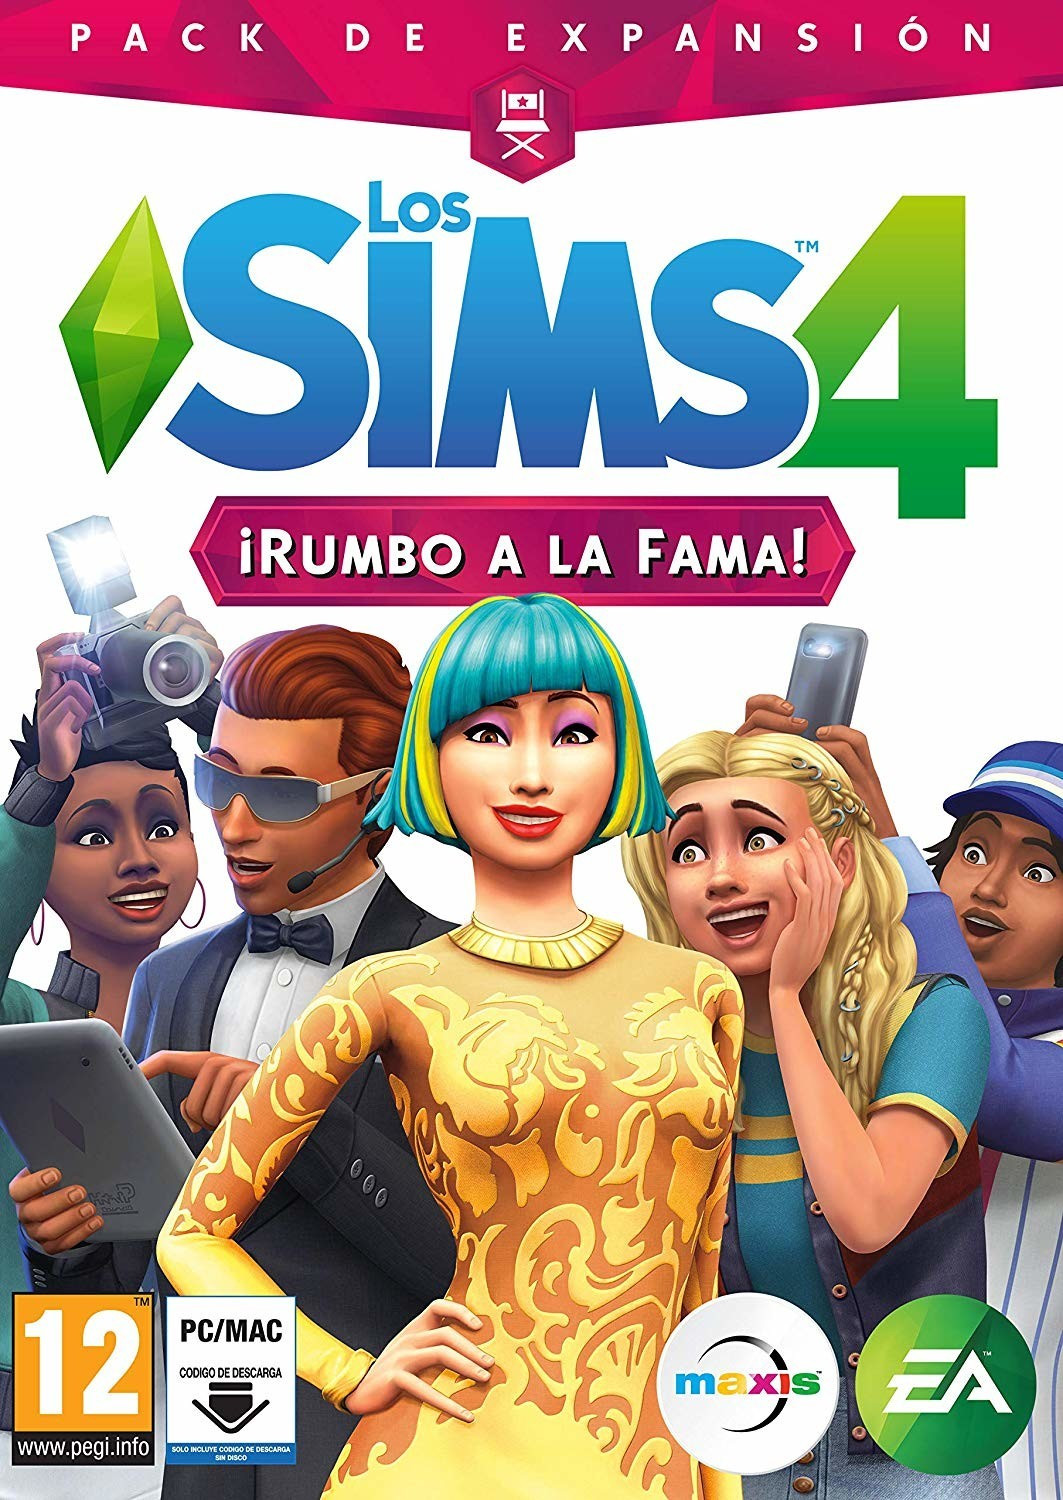 The Sims 4 è disponibile gratis per PC e Mac su Origin fino al 28 maggio